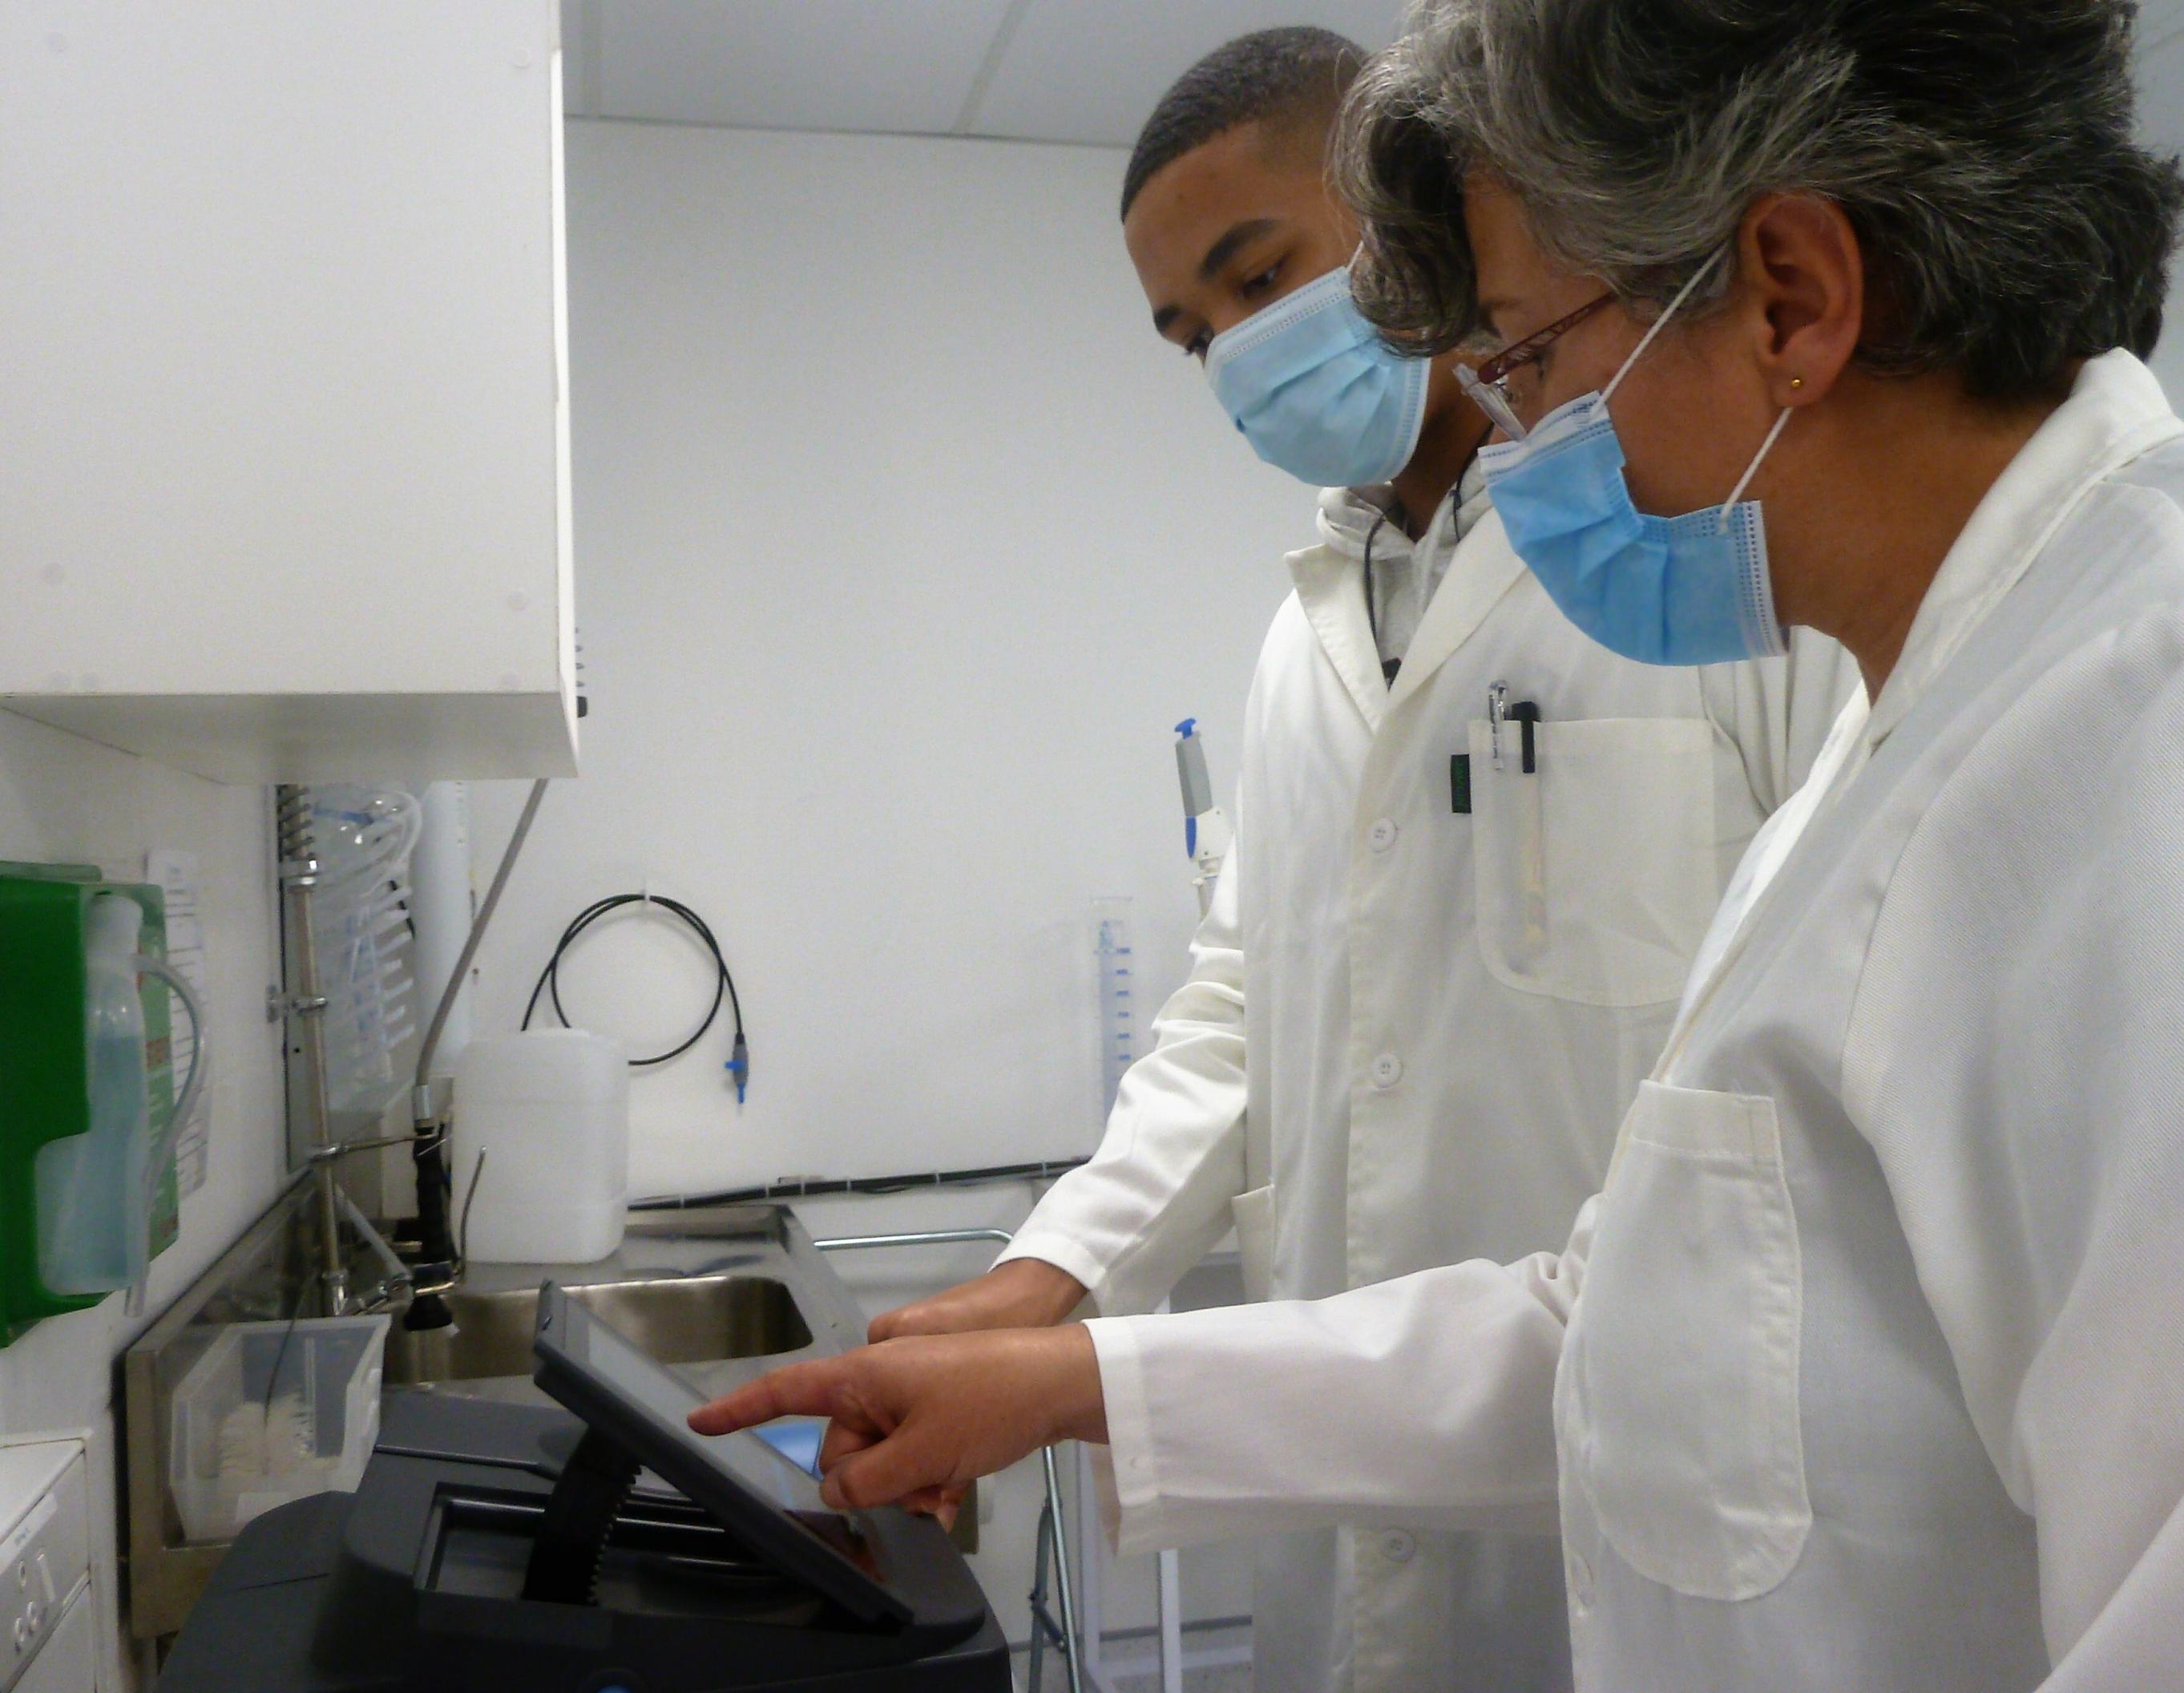 Zwei Forschende mit Masken, eine Frau und ein Mann, schauen im Labor auf die Anzeige eines Labor-Geräts